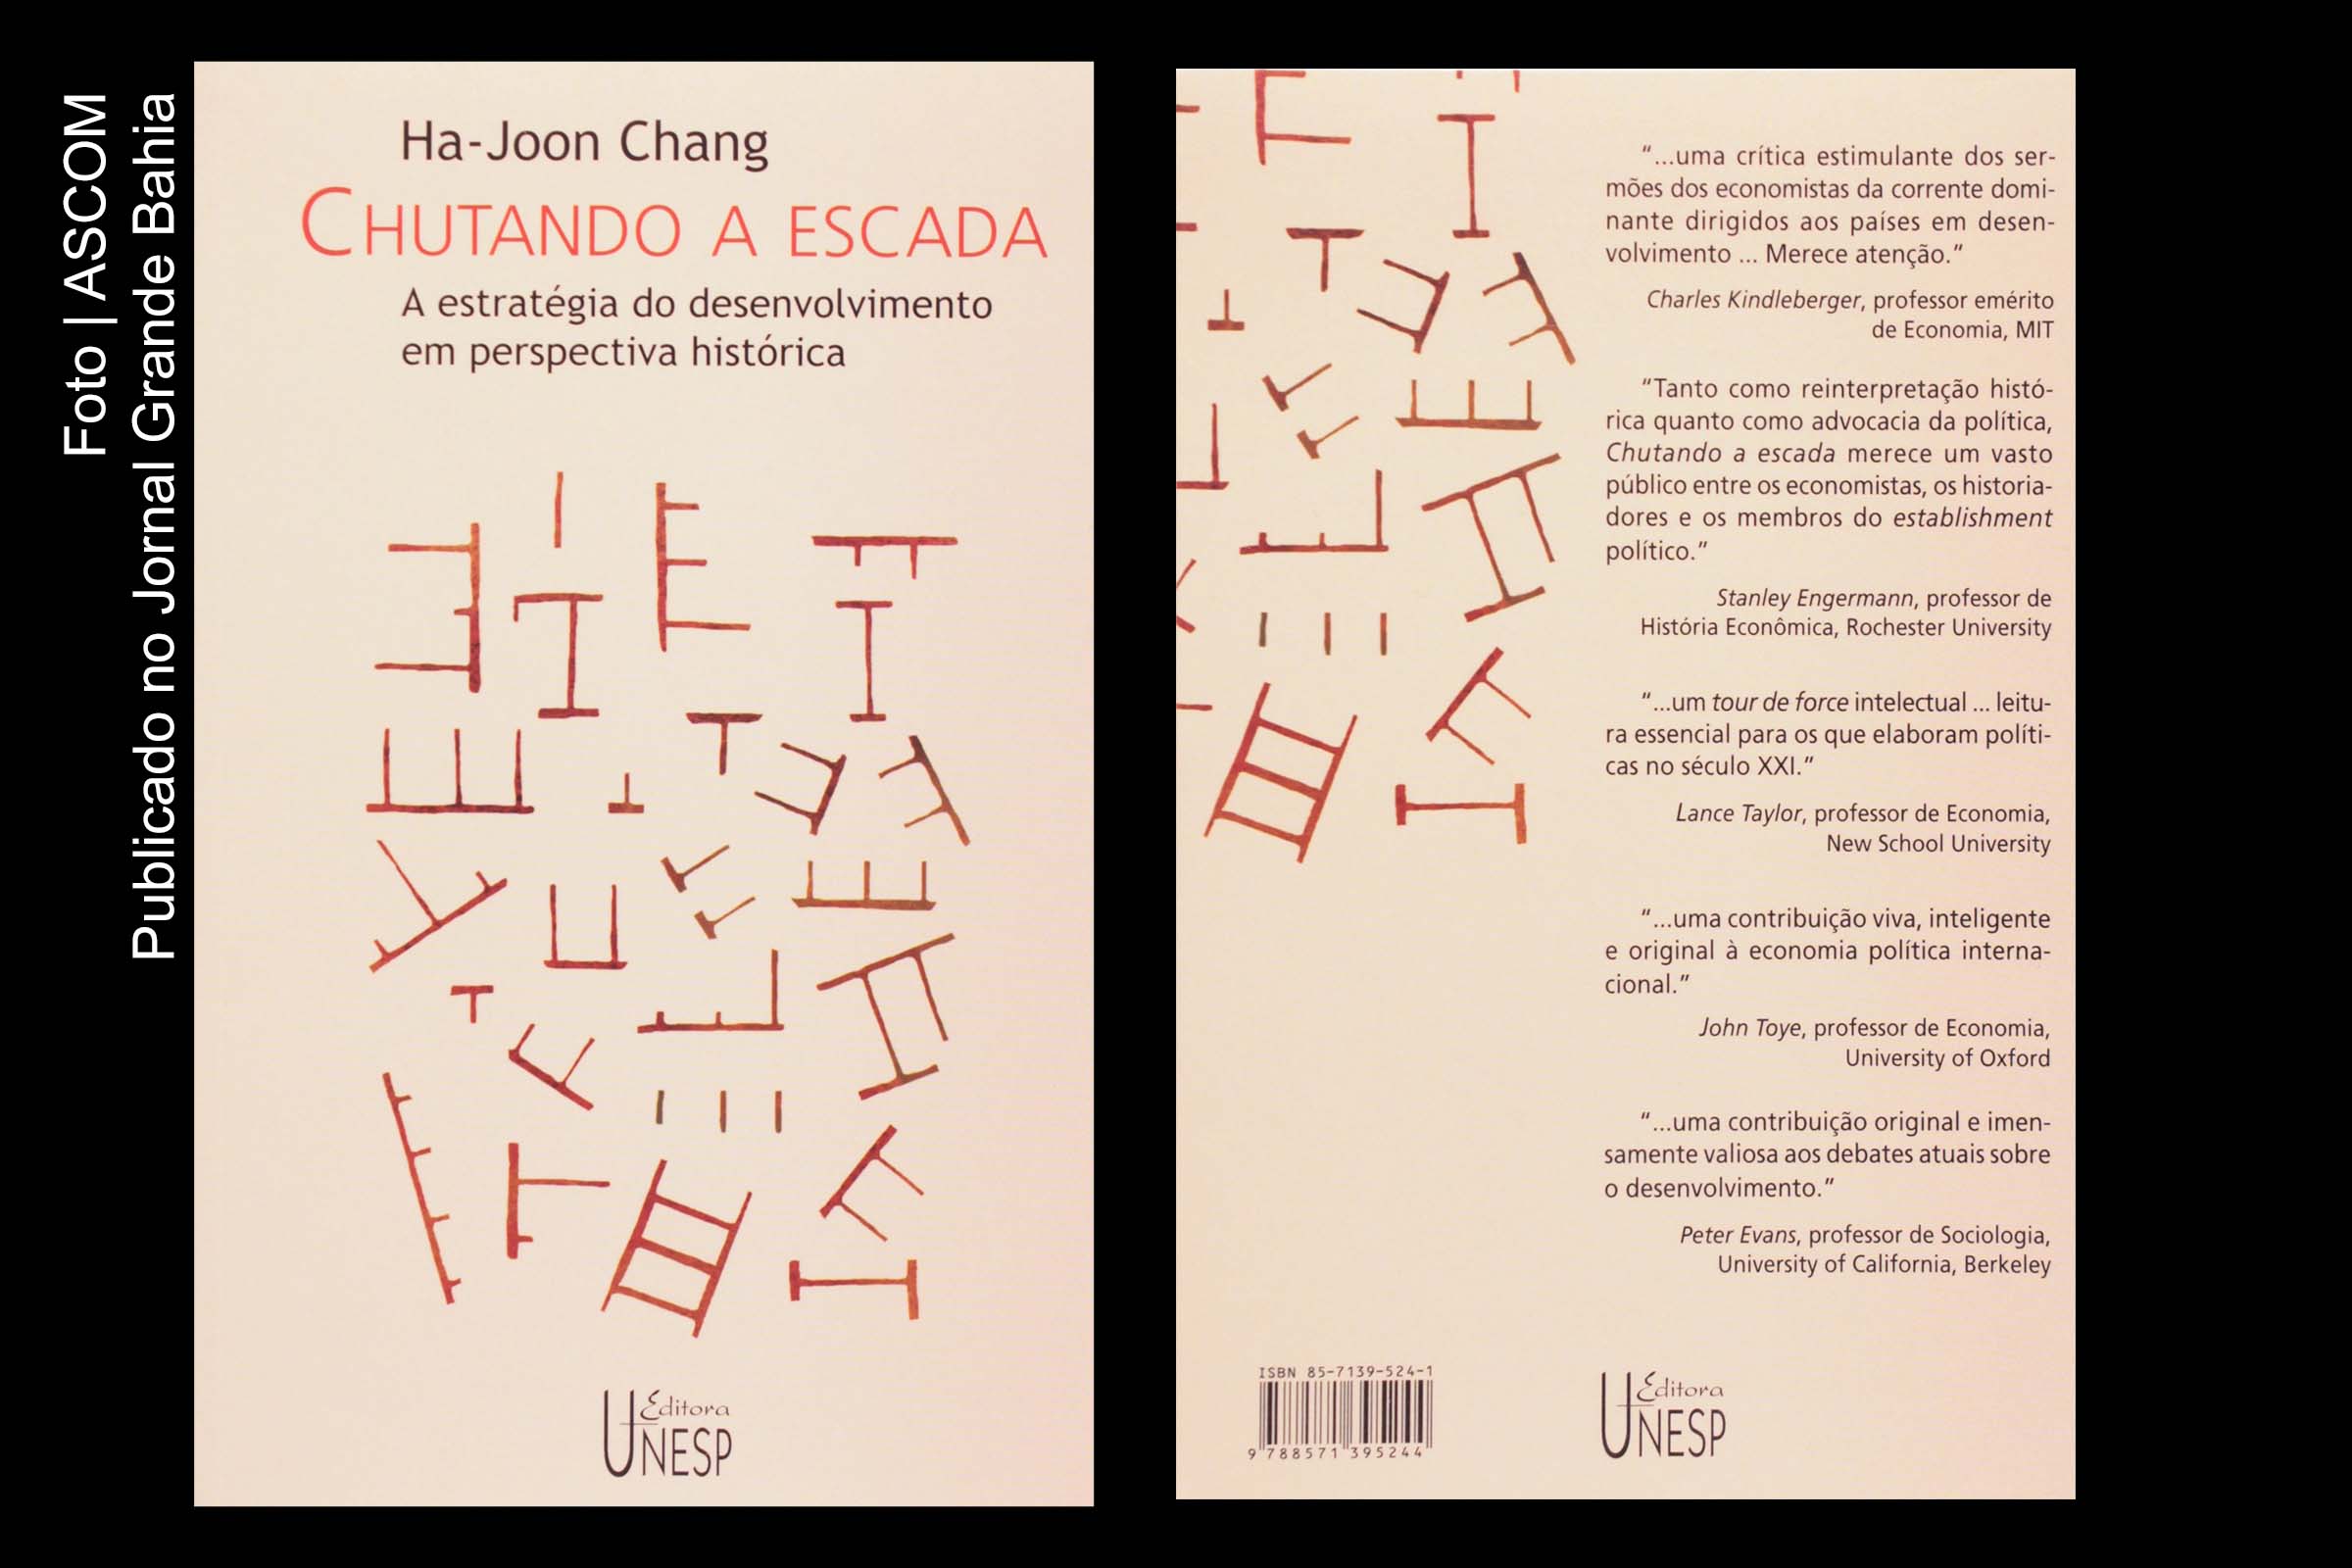 Capa do livro 'Chutando a escada' de autoria de Ha-Joon Chang.